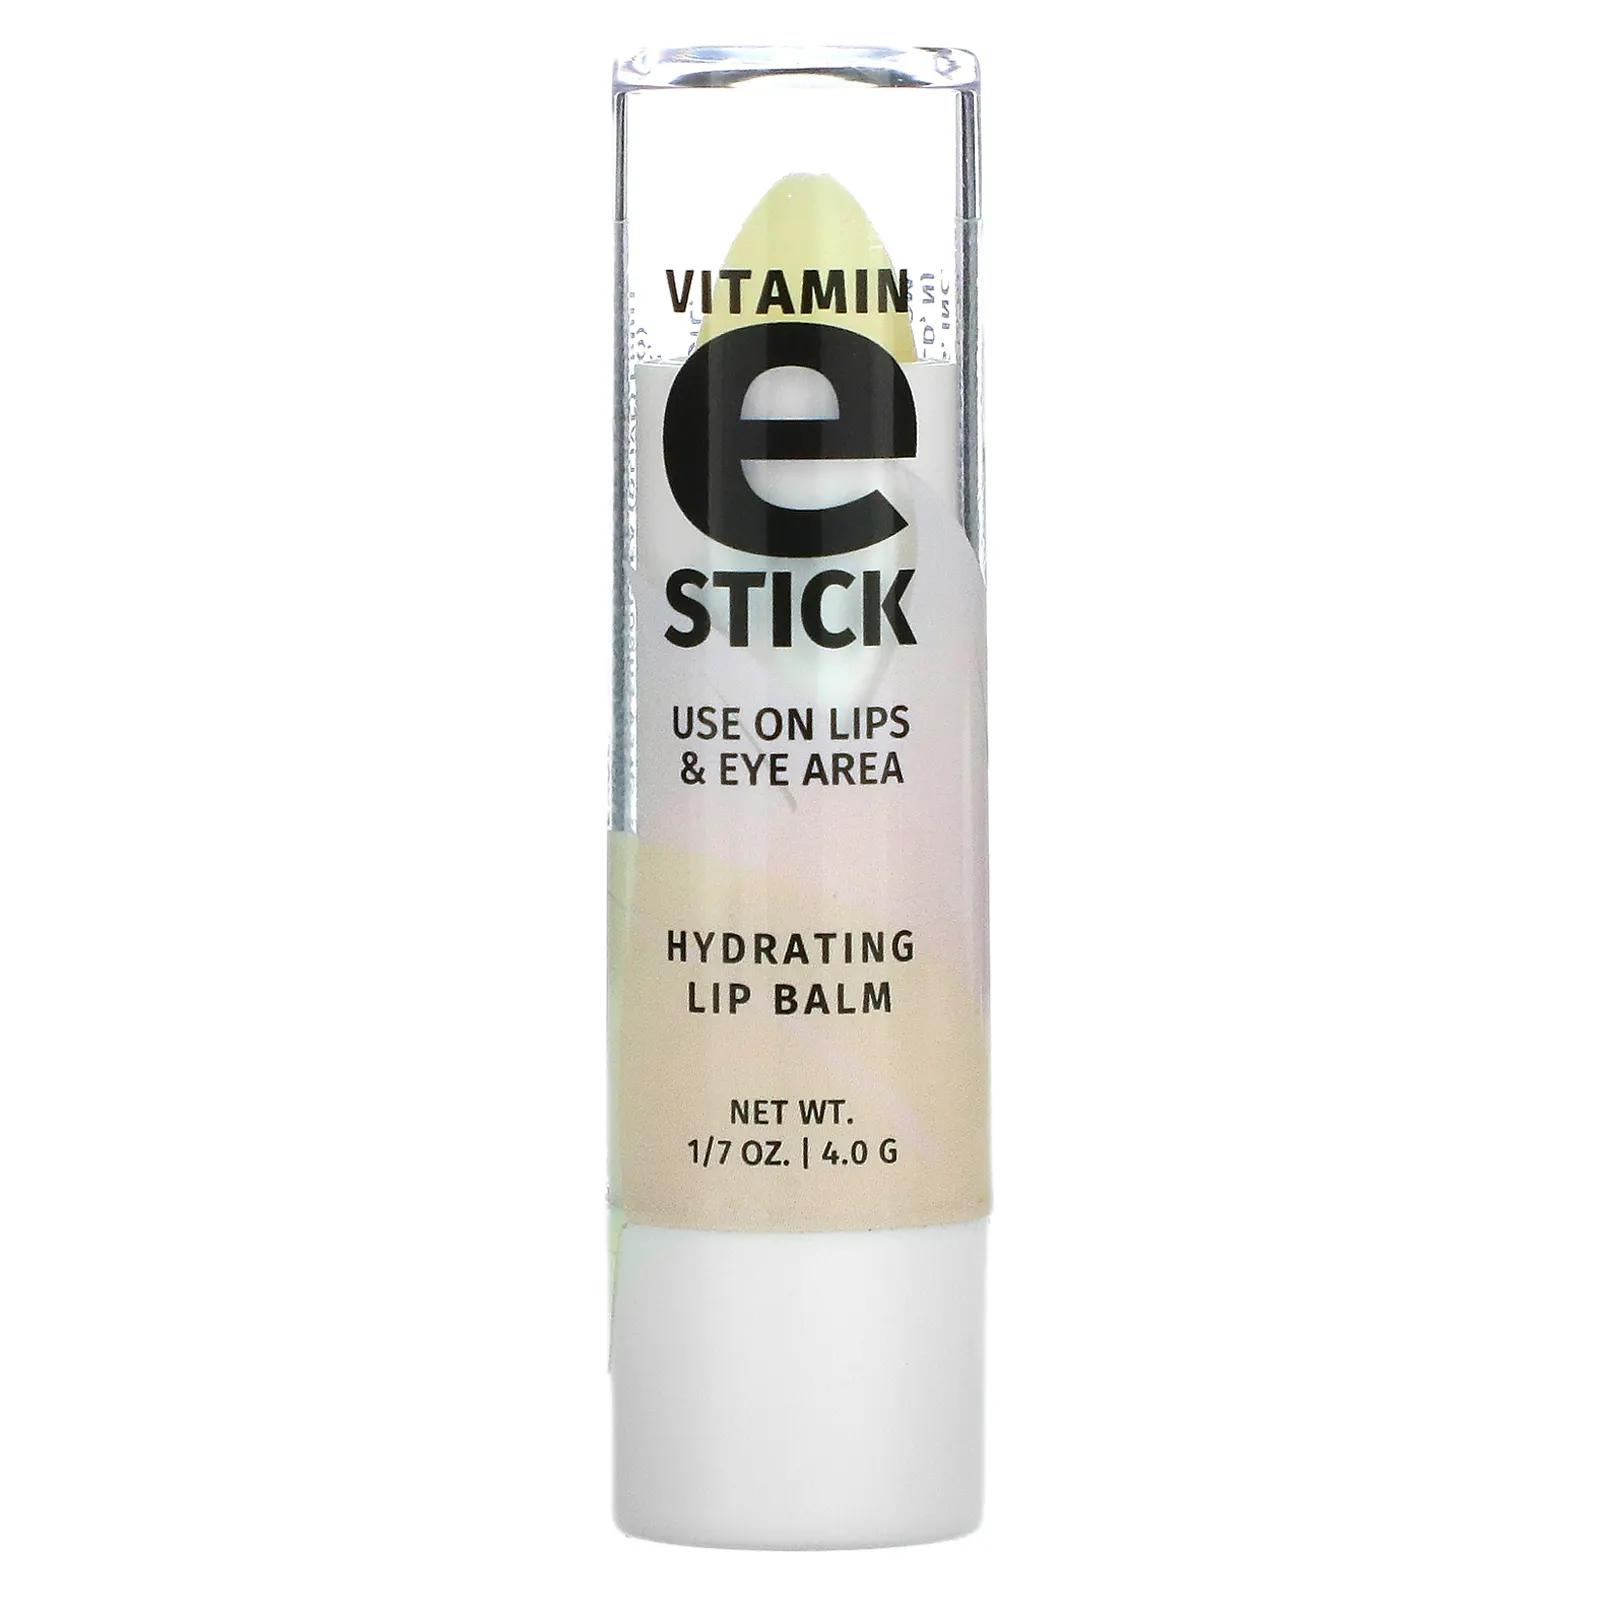 Reviva Labs Vitamin E Stick 1/7 oz. (4.0 g)